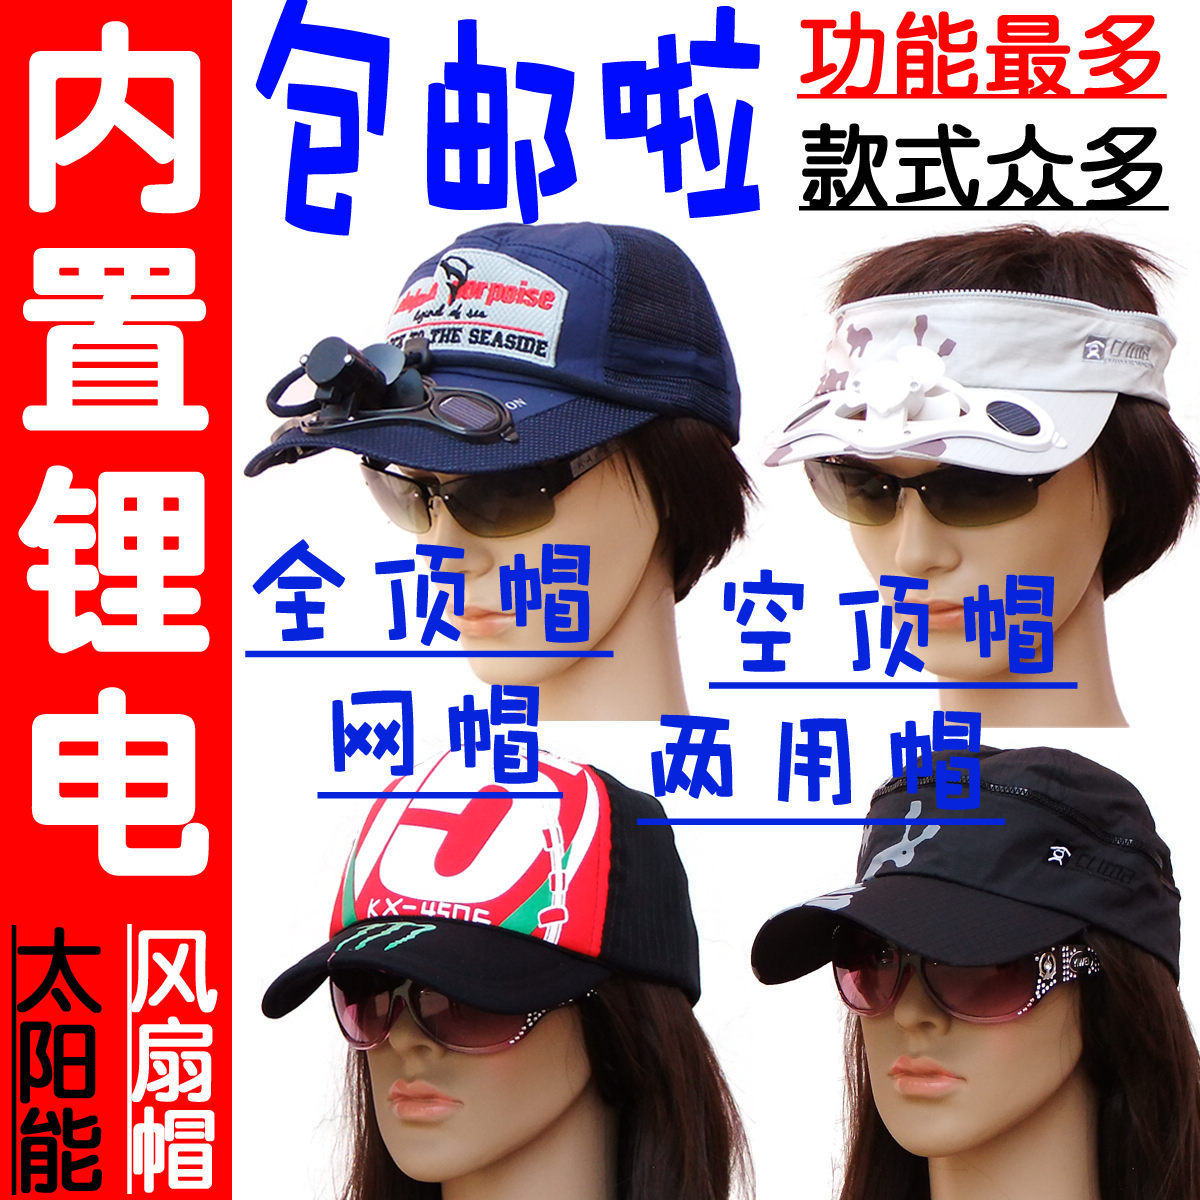 包邮快递 韩版 可充电 太阳能风扇帽 男女 可普通电池 带风扇帽子